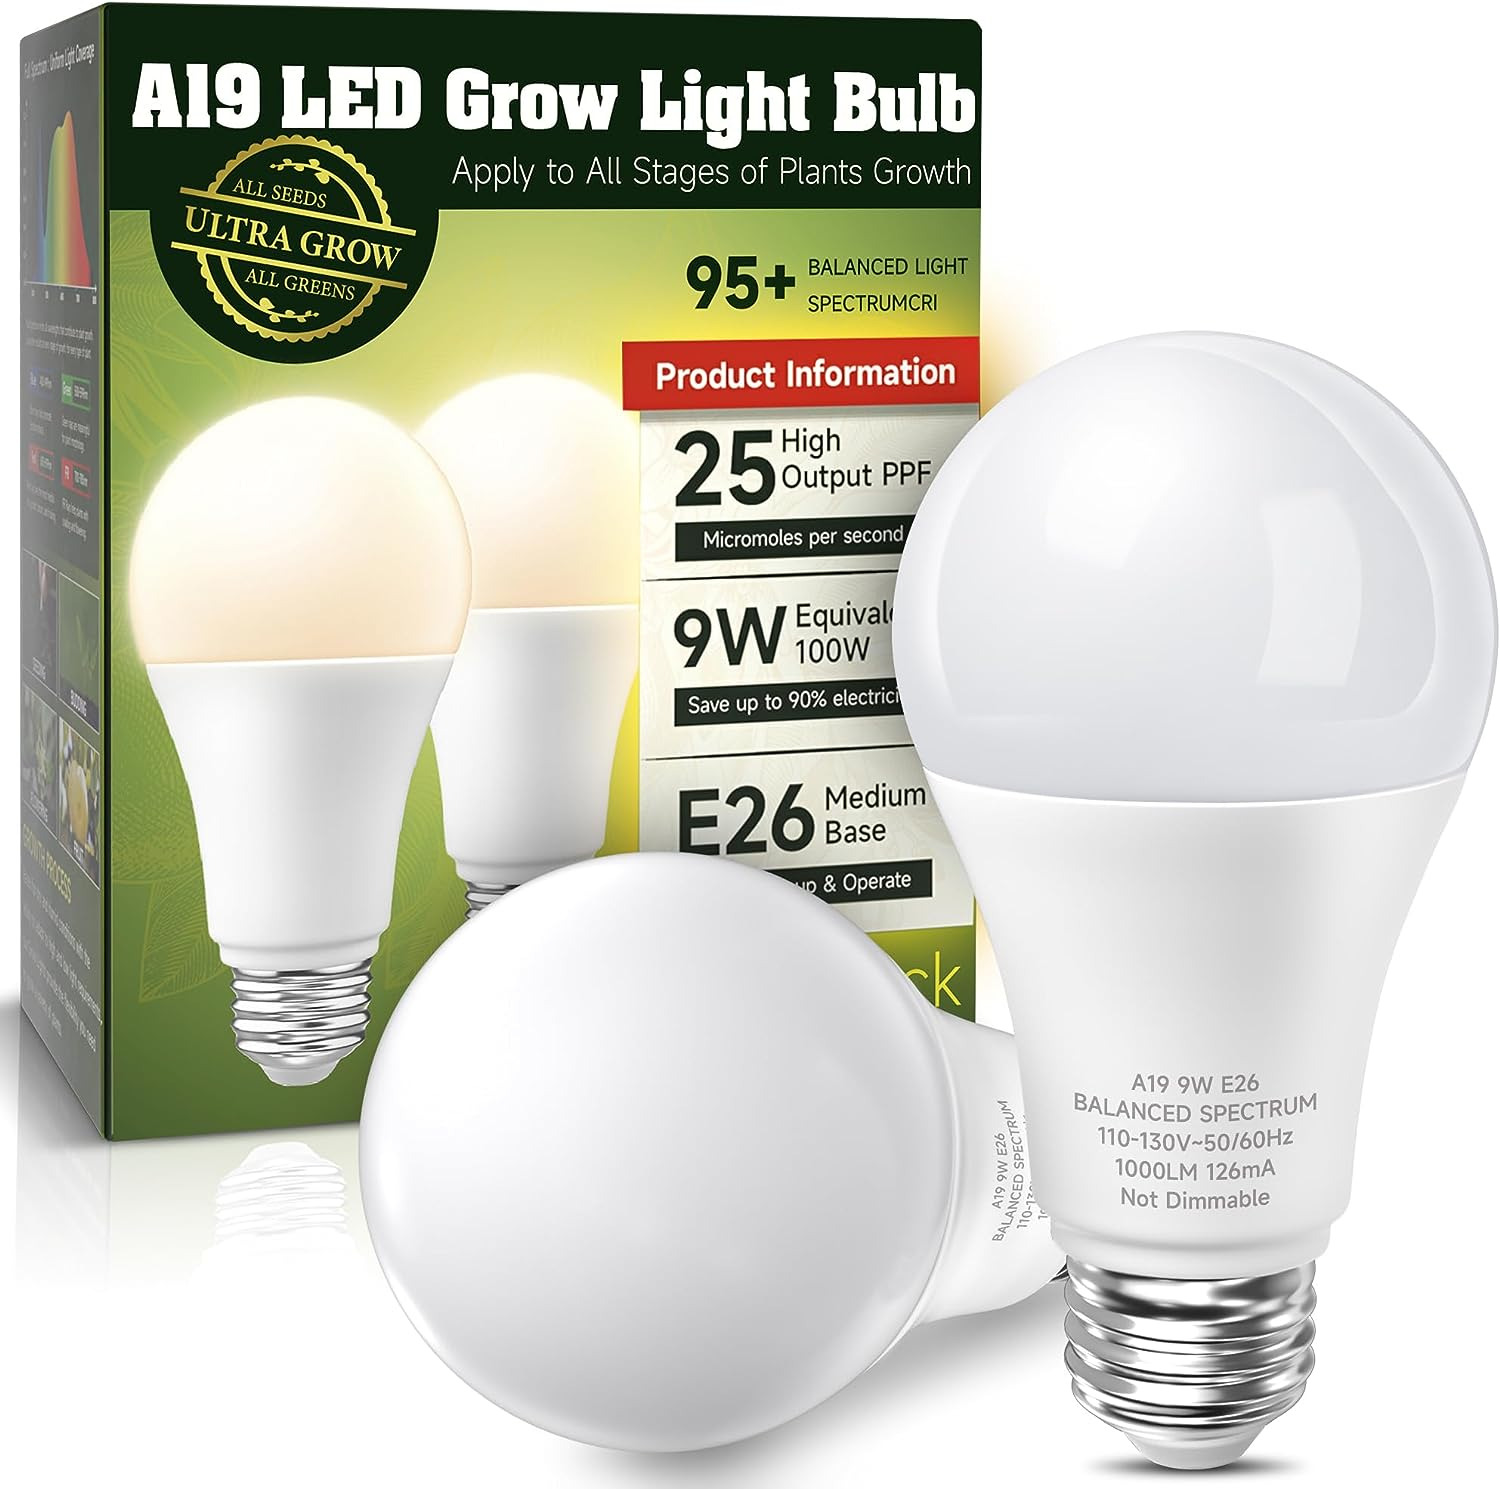 Grow Light Bulbs, LED Grow Light Bulbs A19, Full Spectrum Plant Light Bulbs